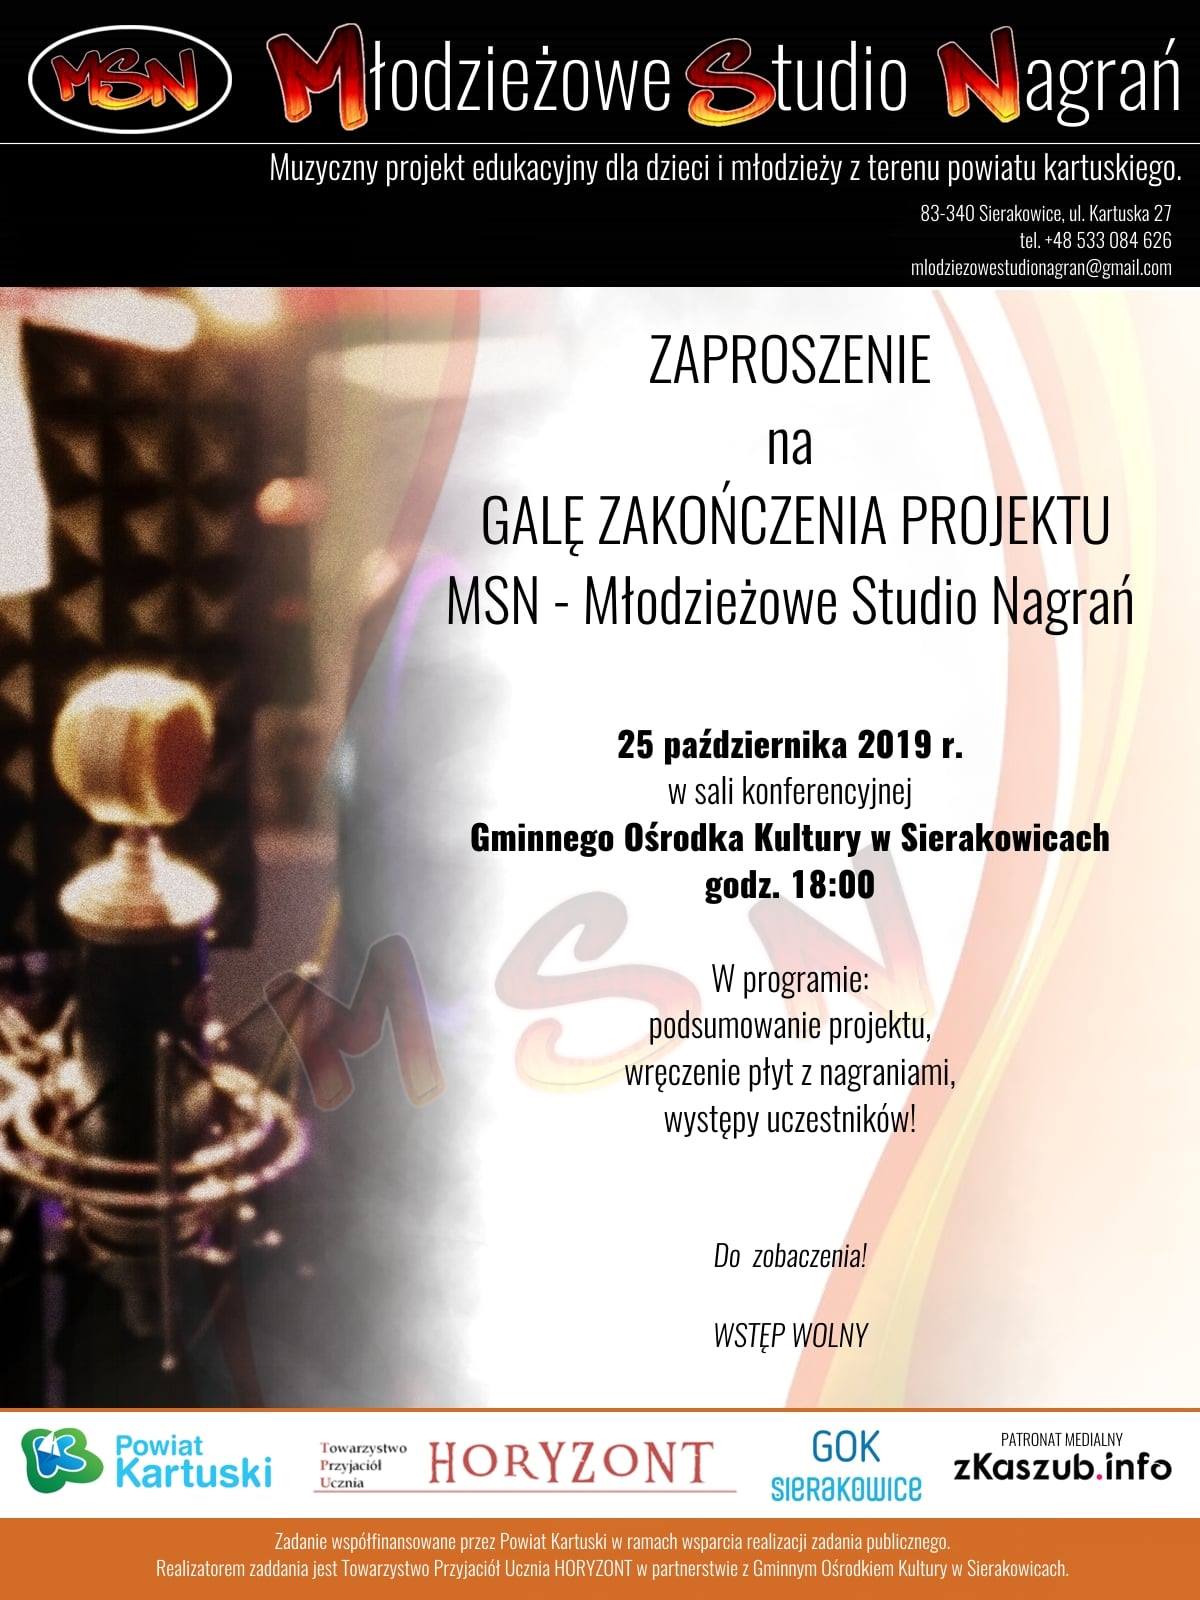 Gala zakończenia projektu MSN - Sierakowice 2019